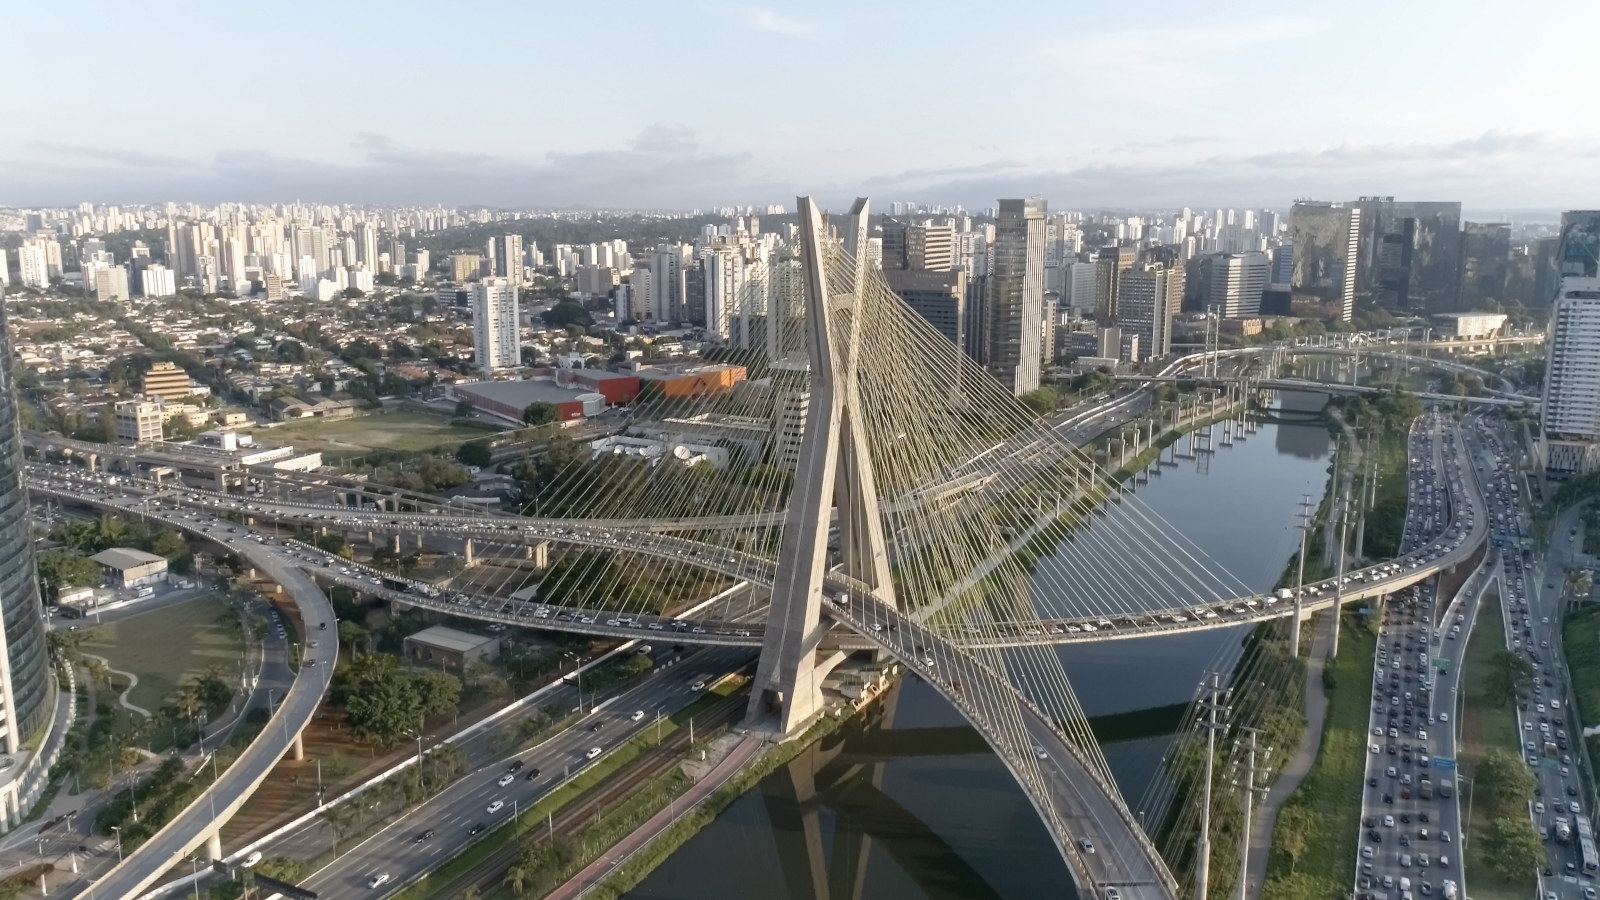 Ponte estaiada Octavio Frias em São Paulo